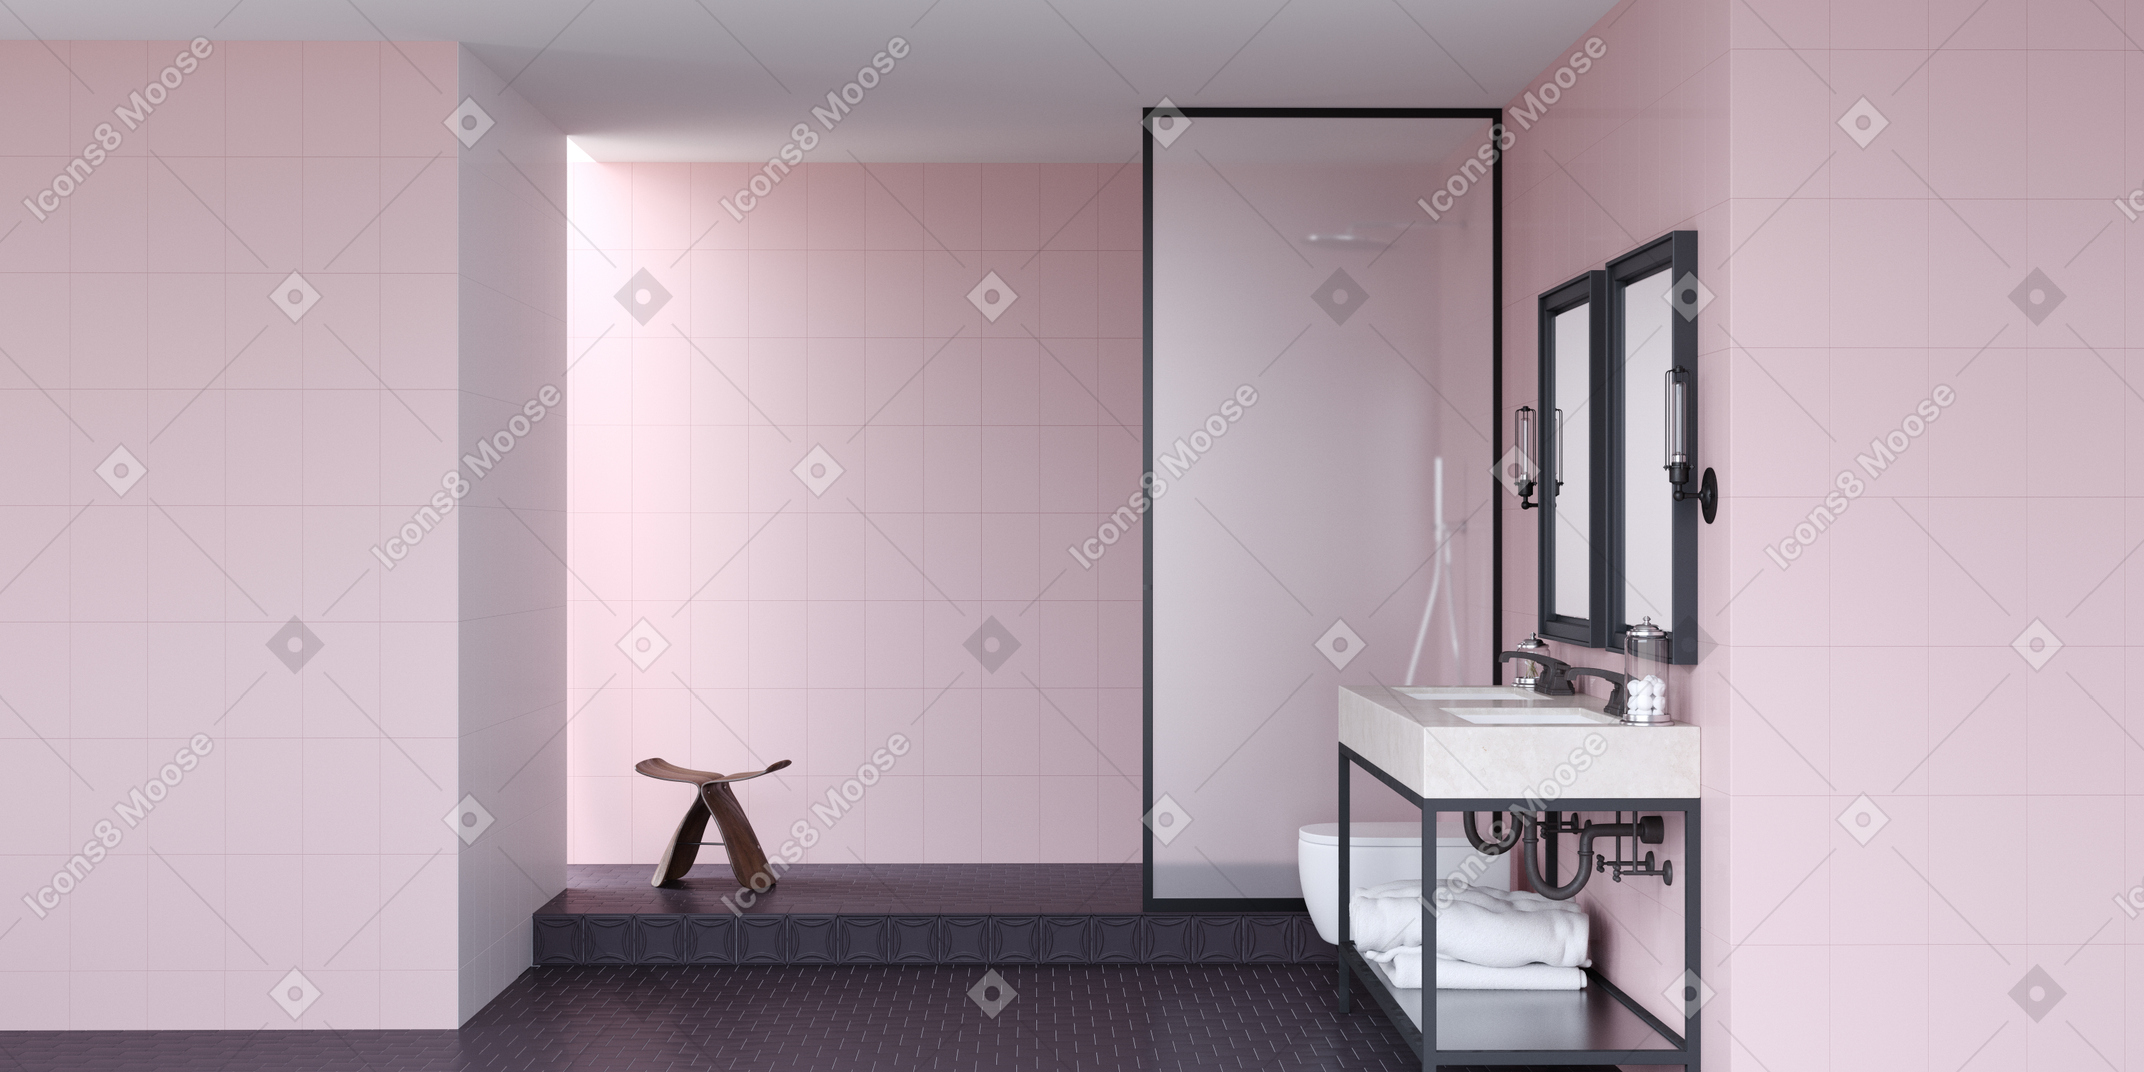 ピンクの壁と黒い床のバスルーム